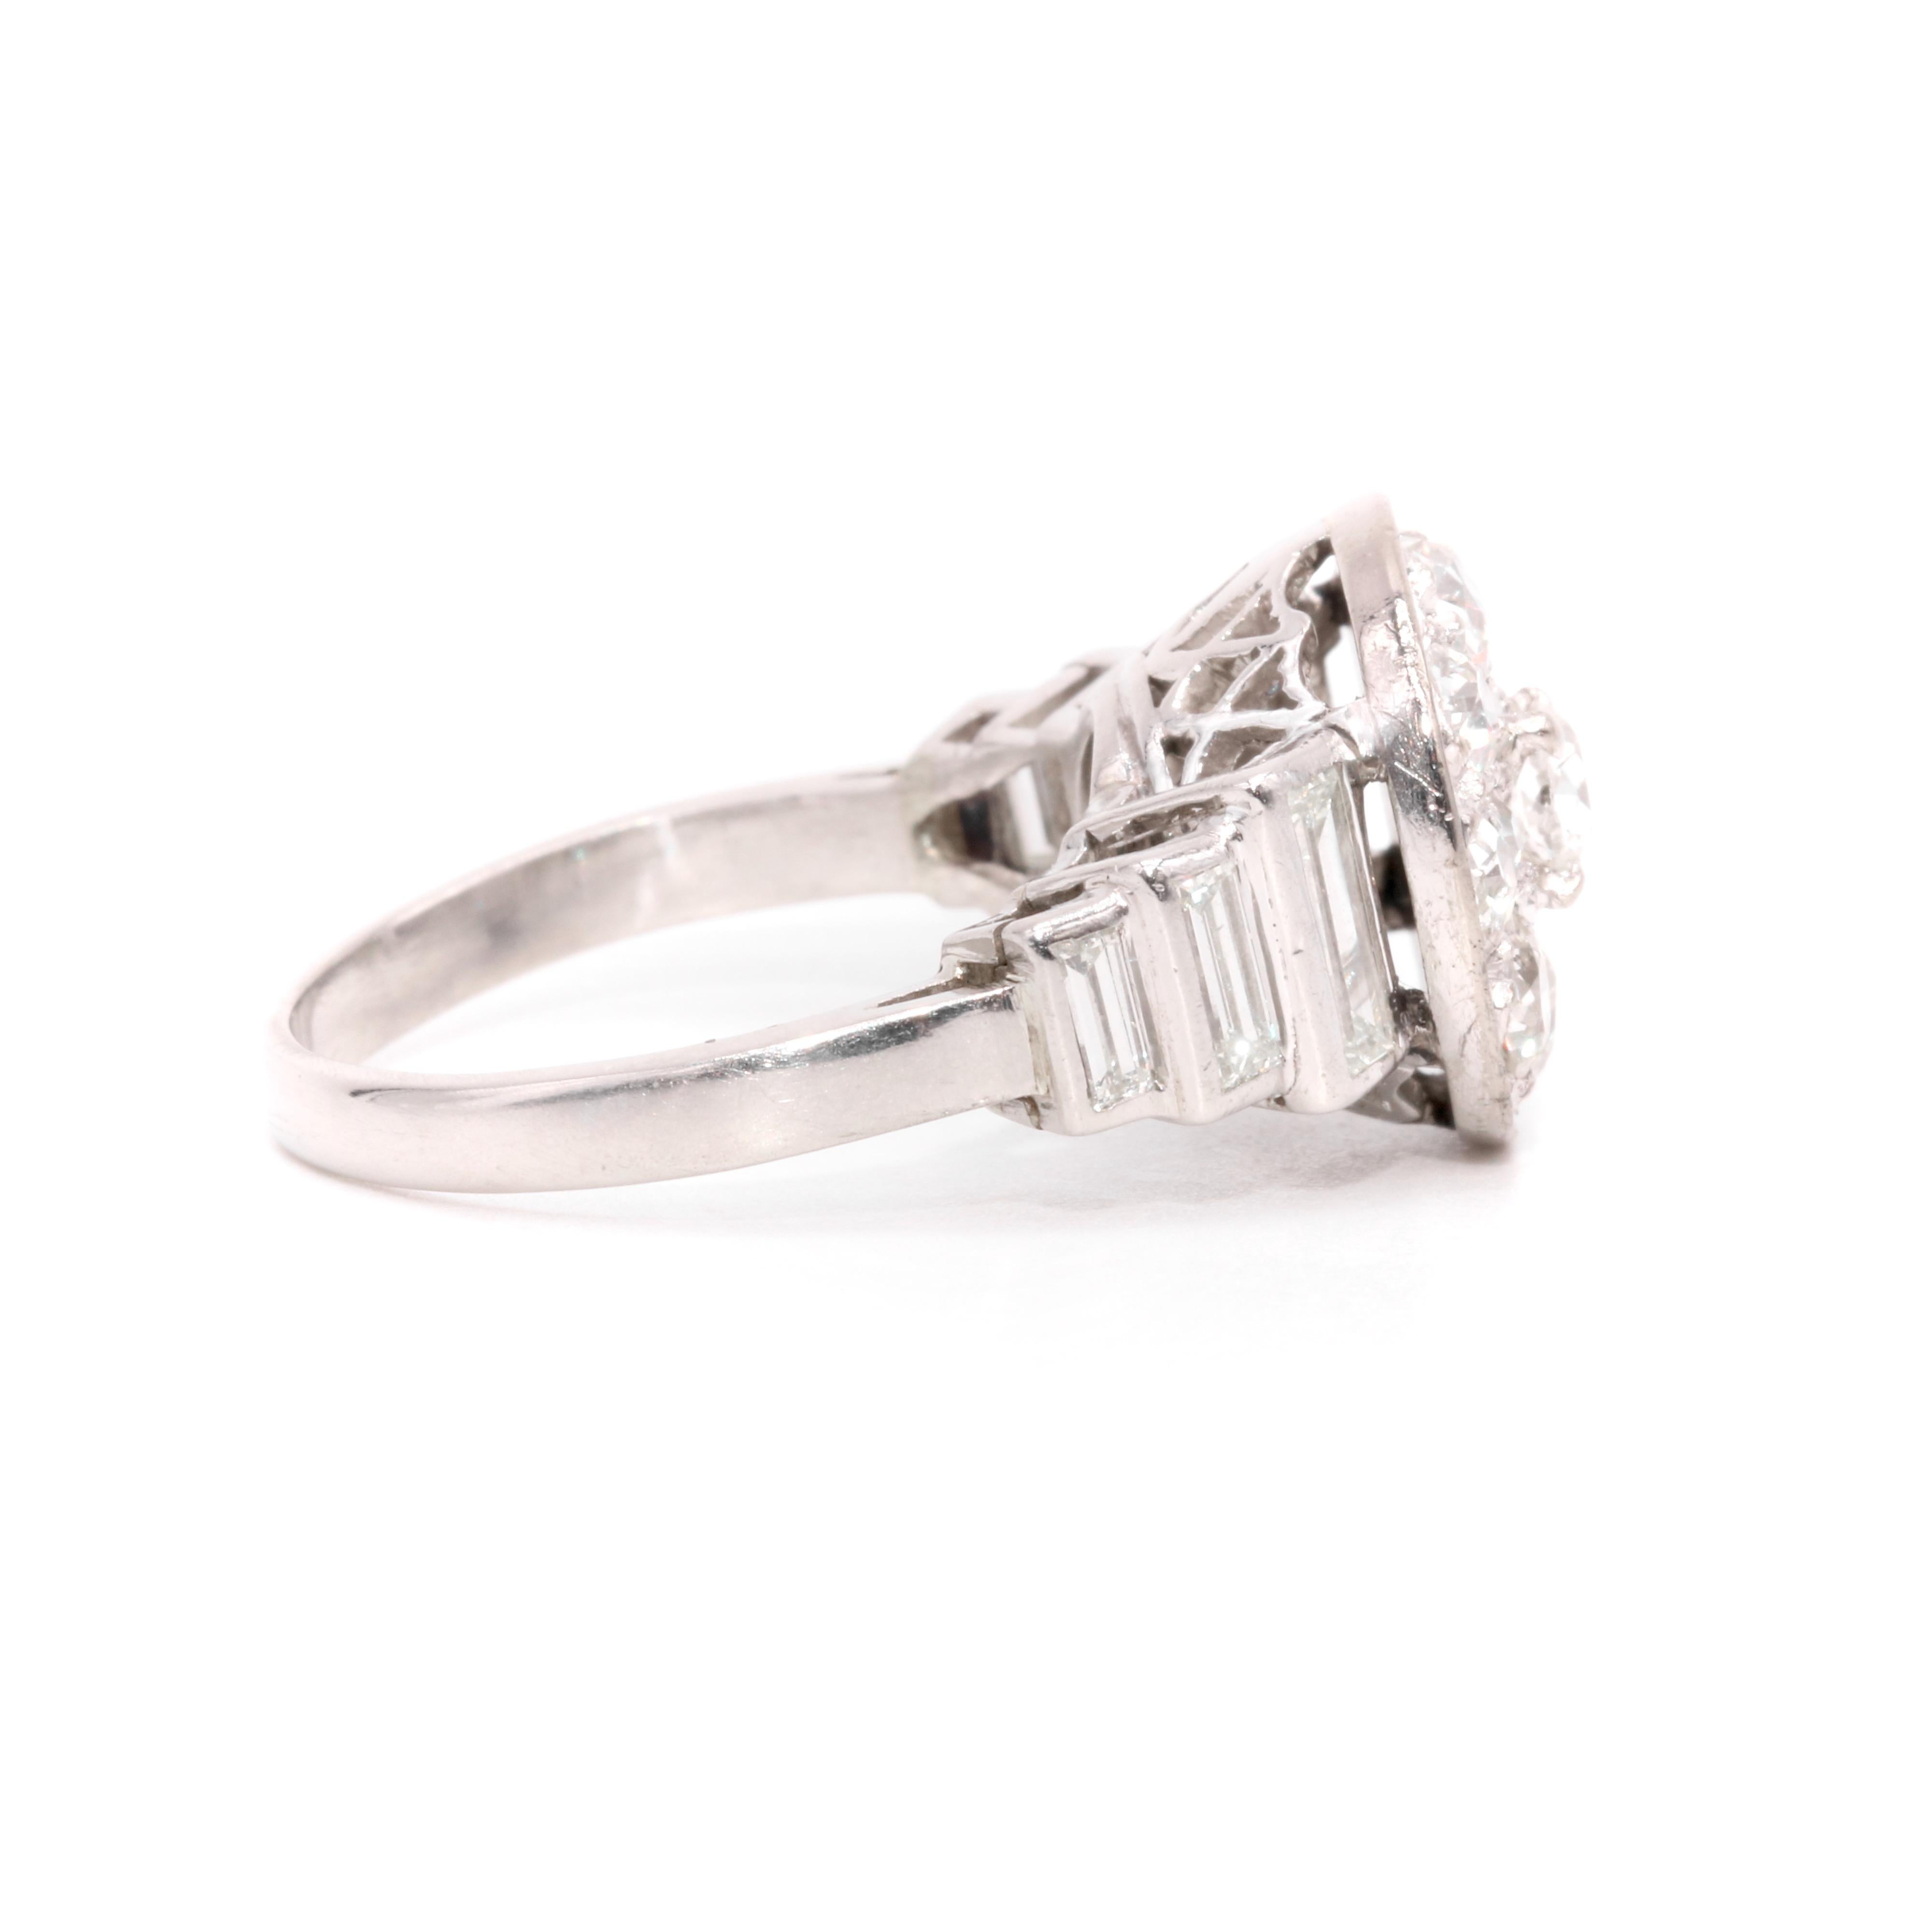 Art Deco 1930s Platinum 2.44ctw Old Cut Diamond Ring with Baguette Cut Shoulders For Sale 2